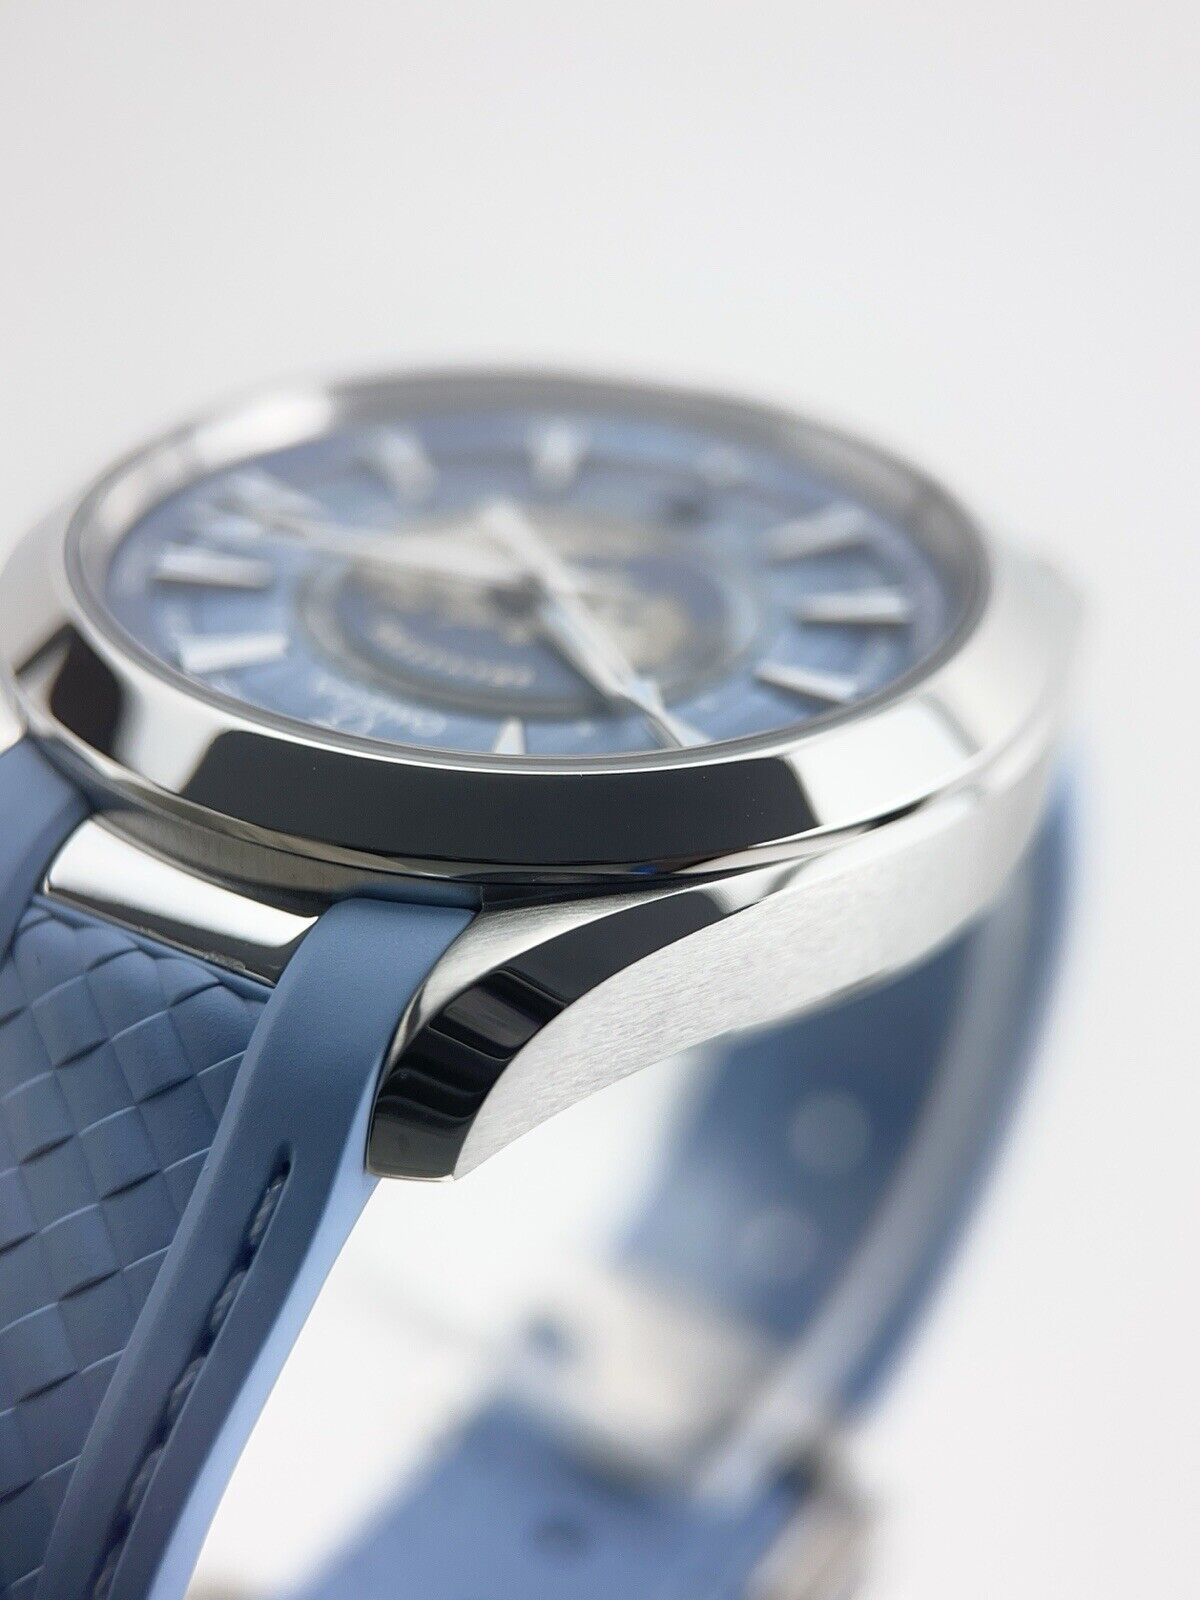 NEW Omega Seamaster Aqua Terra Worldtimer Summer Blue 43mm Automatic Watch